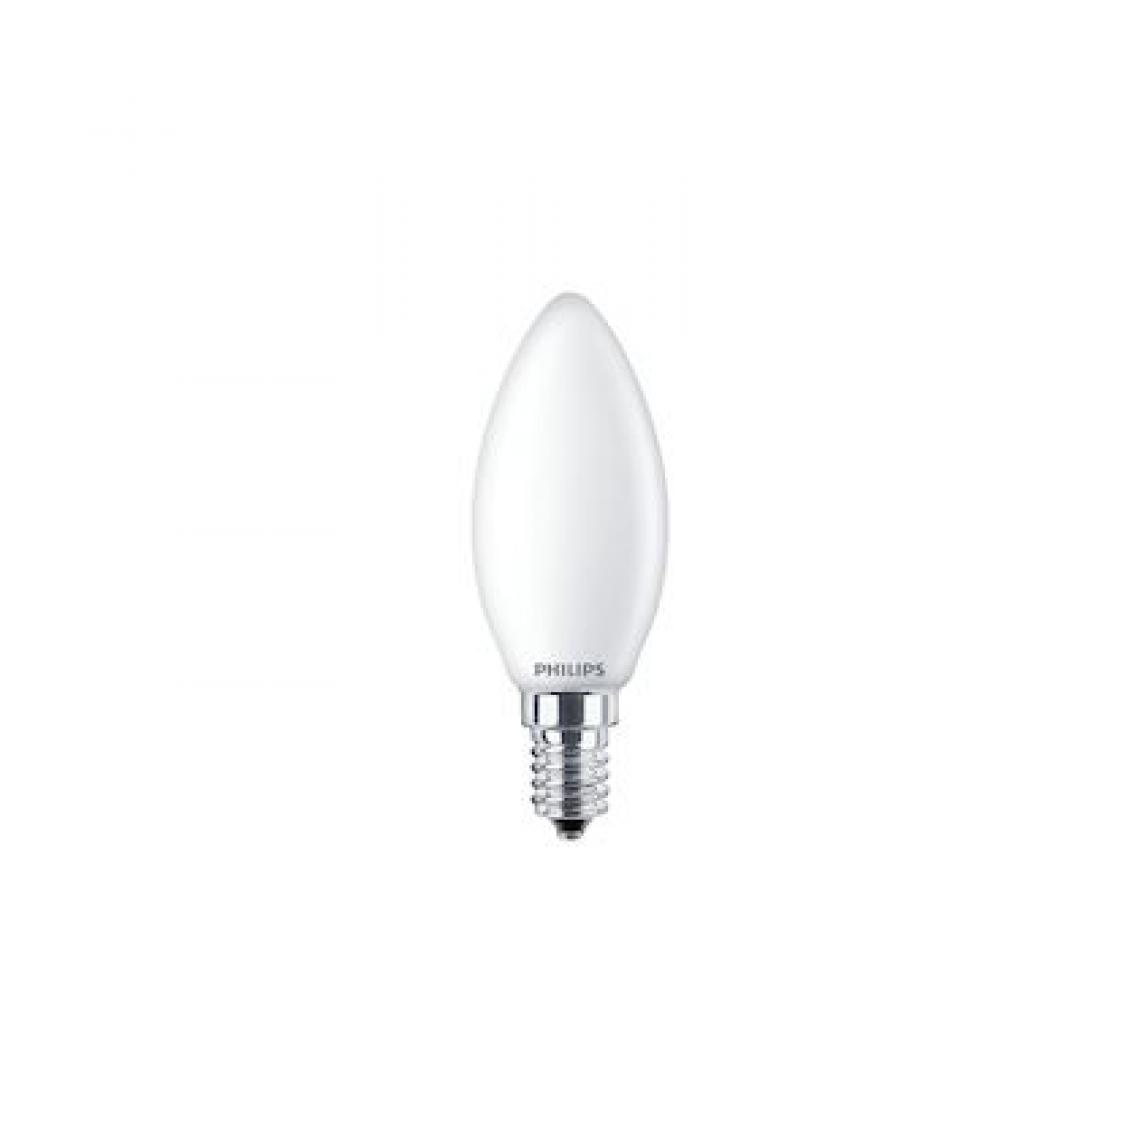 Philips - ampoule à led - philips cla ledcandle nd - e14 - 4.3w - 2700k - b35 fr - philips 706398 - Ampoules LED